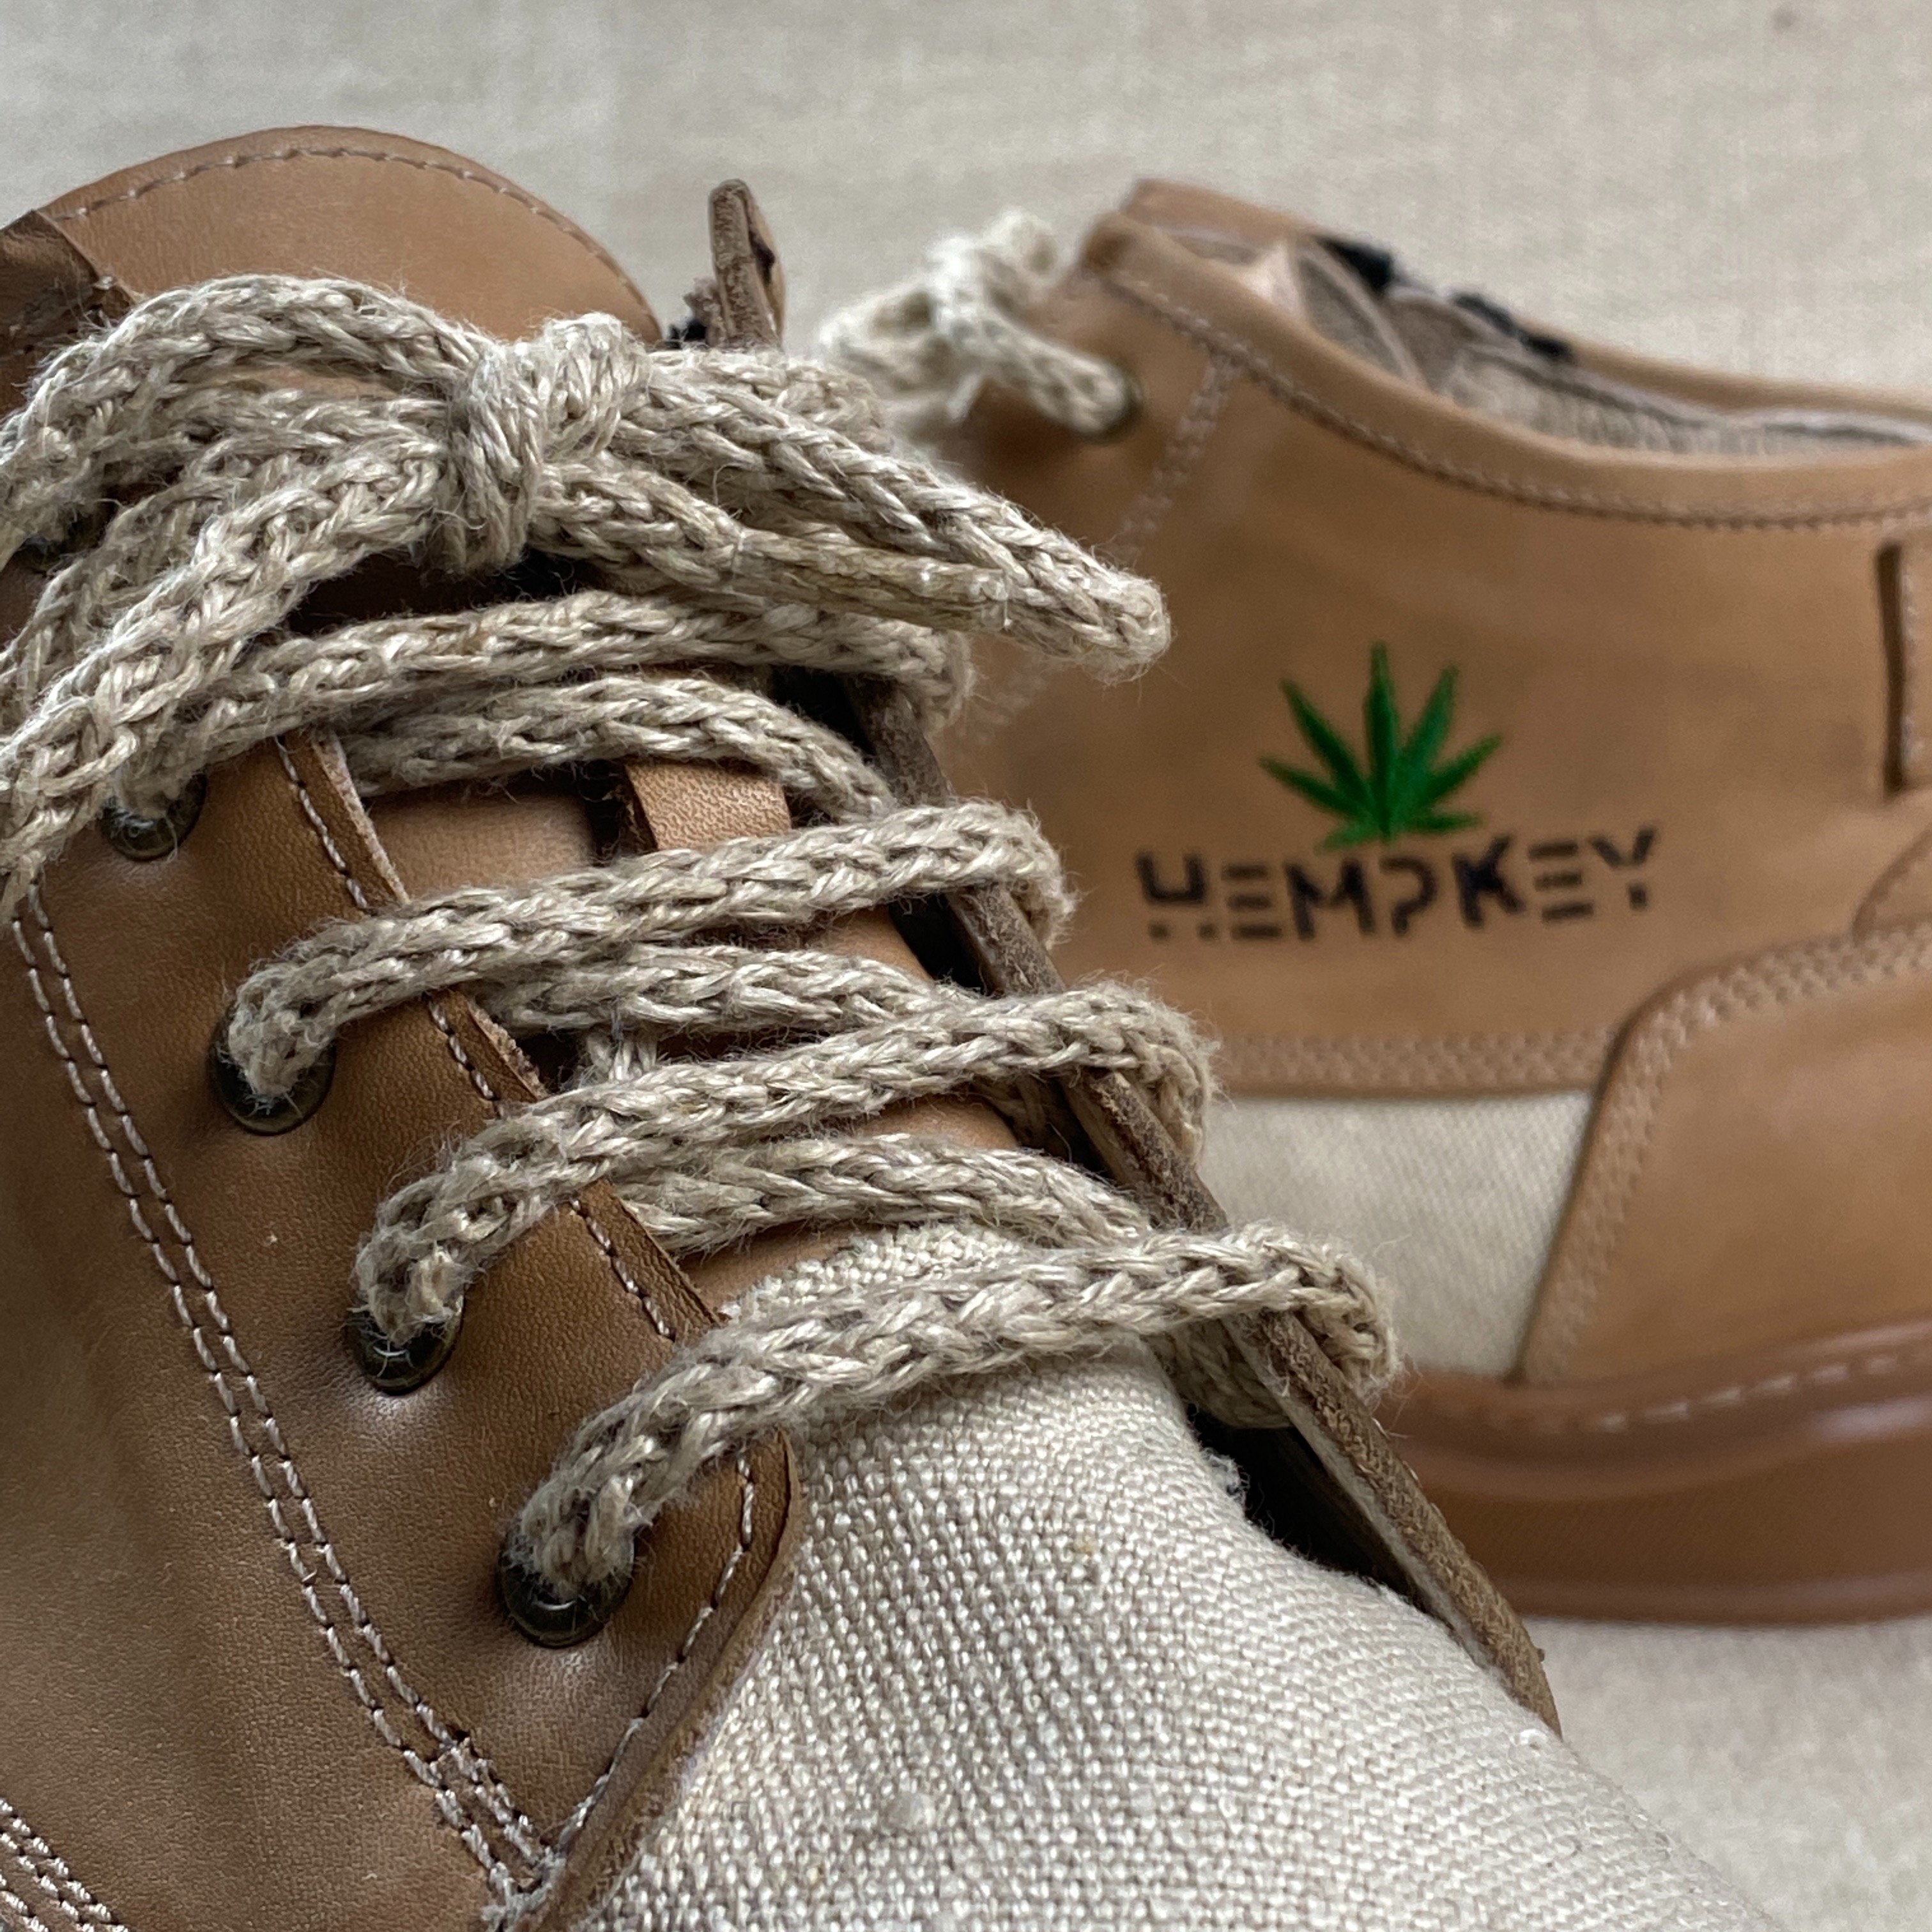 Hemp Boot's Kenevir Yapımından Ayakkabı